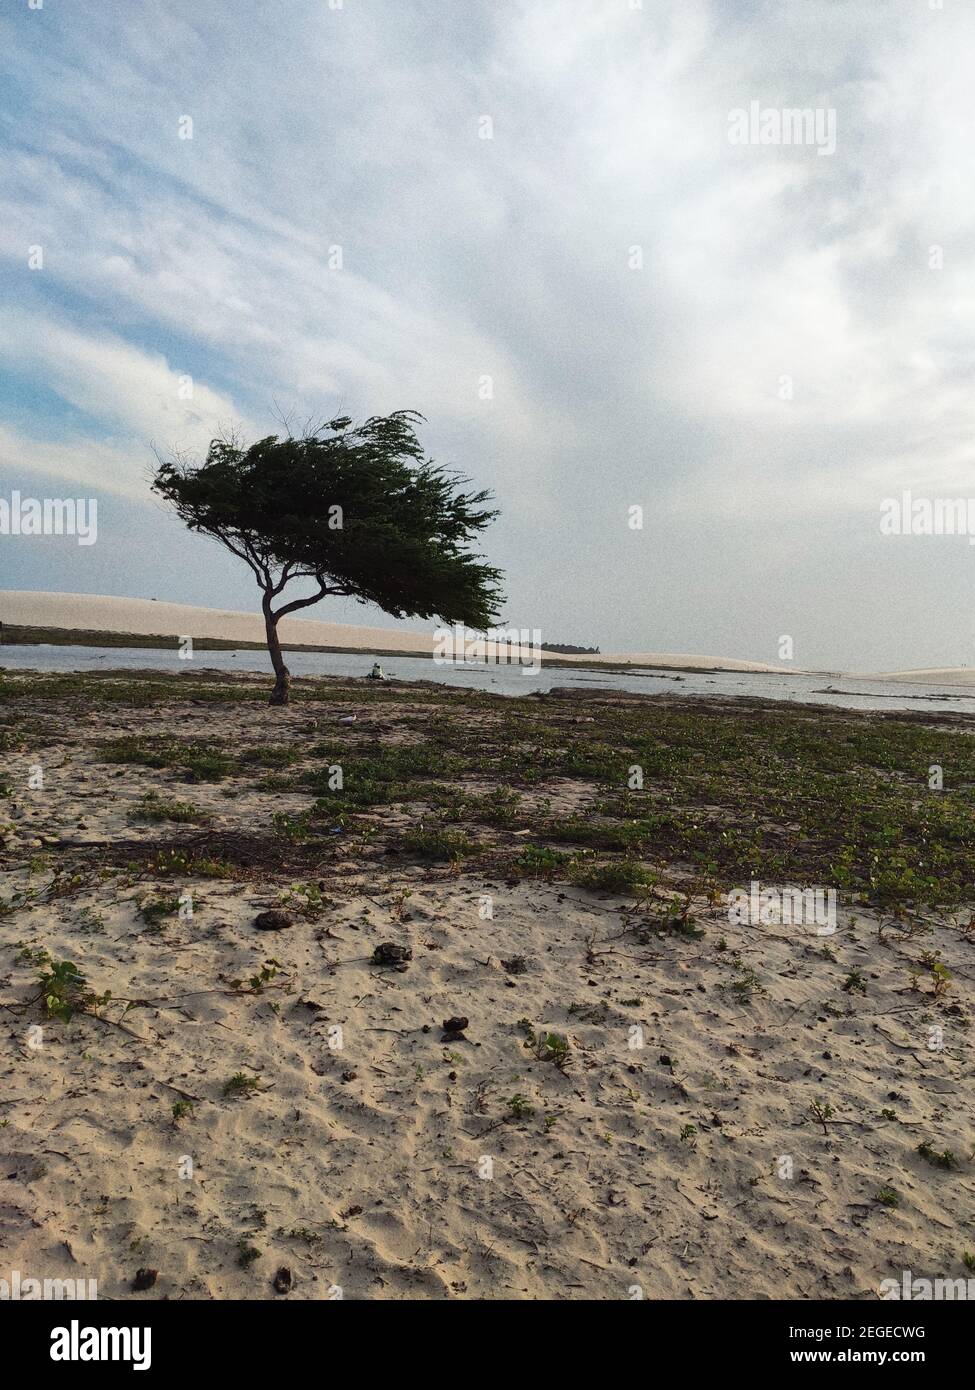 Fotos aufgenommen in Jericoacora - BRASILIEN, wo es diese Wunder, Küsten, Strände und Bäume, die ihre eigene Poesie zu machen. Stockfoto